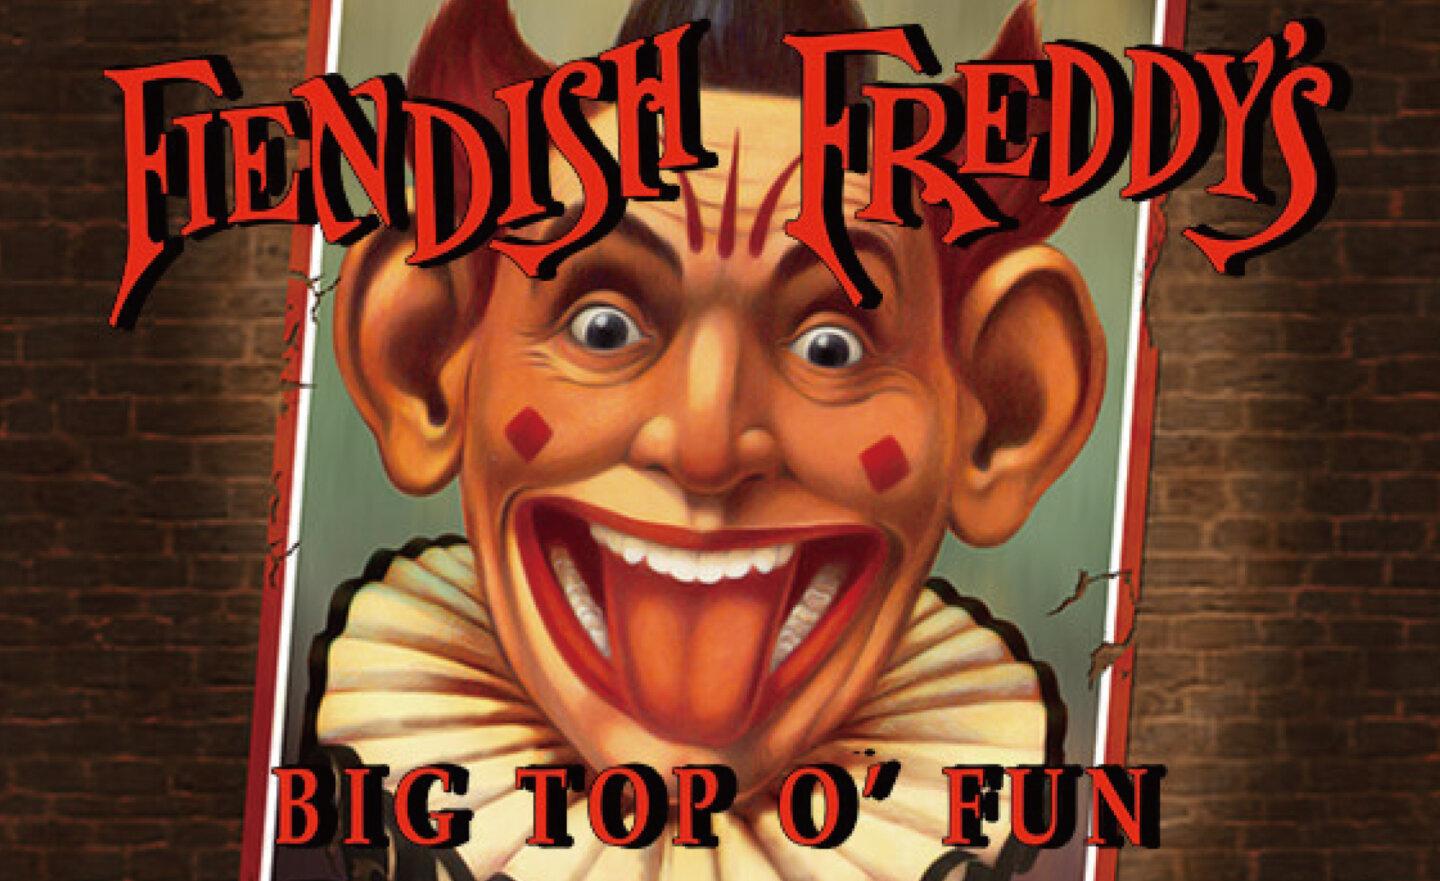 【限時免費】GOG 平台放送《Fiendish Freddy’s Big Top o’ Fun》運動街機遊戲， 5 月 22 日 21:00 截止